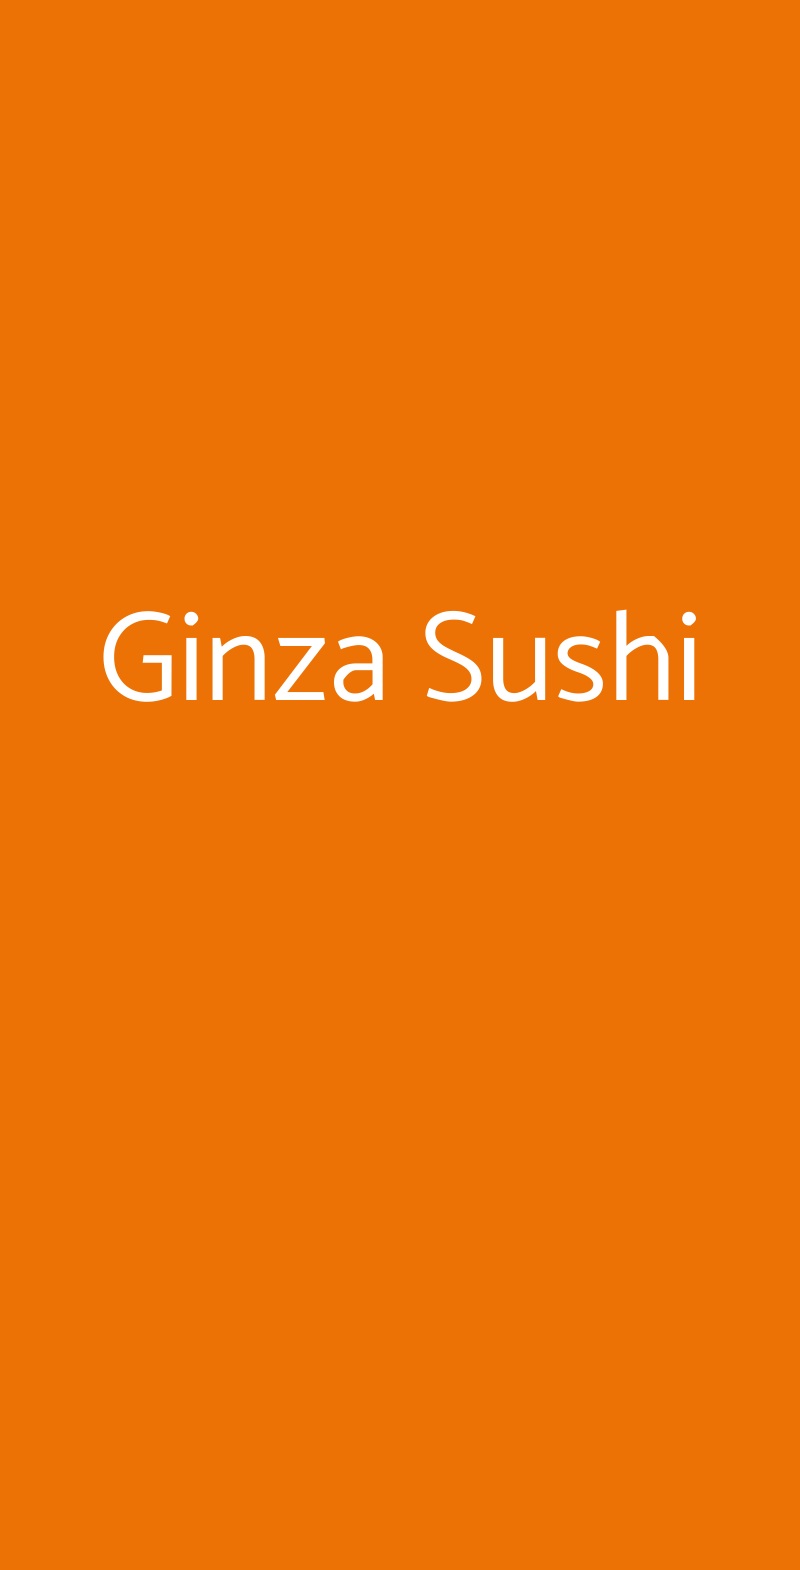 Ginza Sushi Milano menù 1 pagina